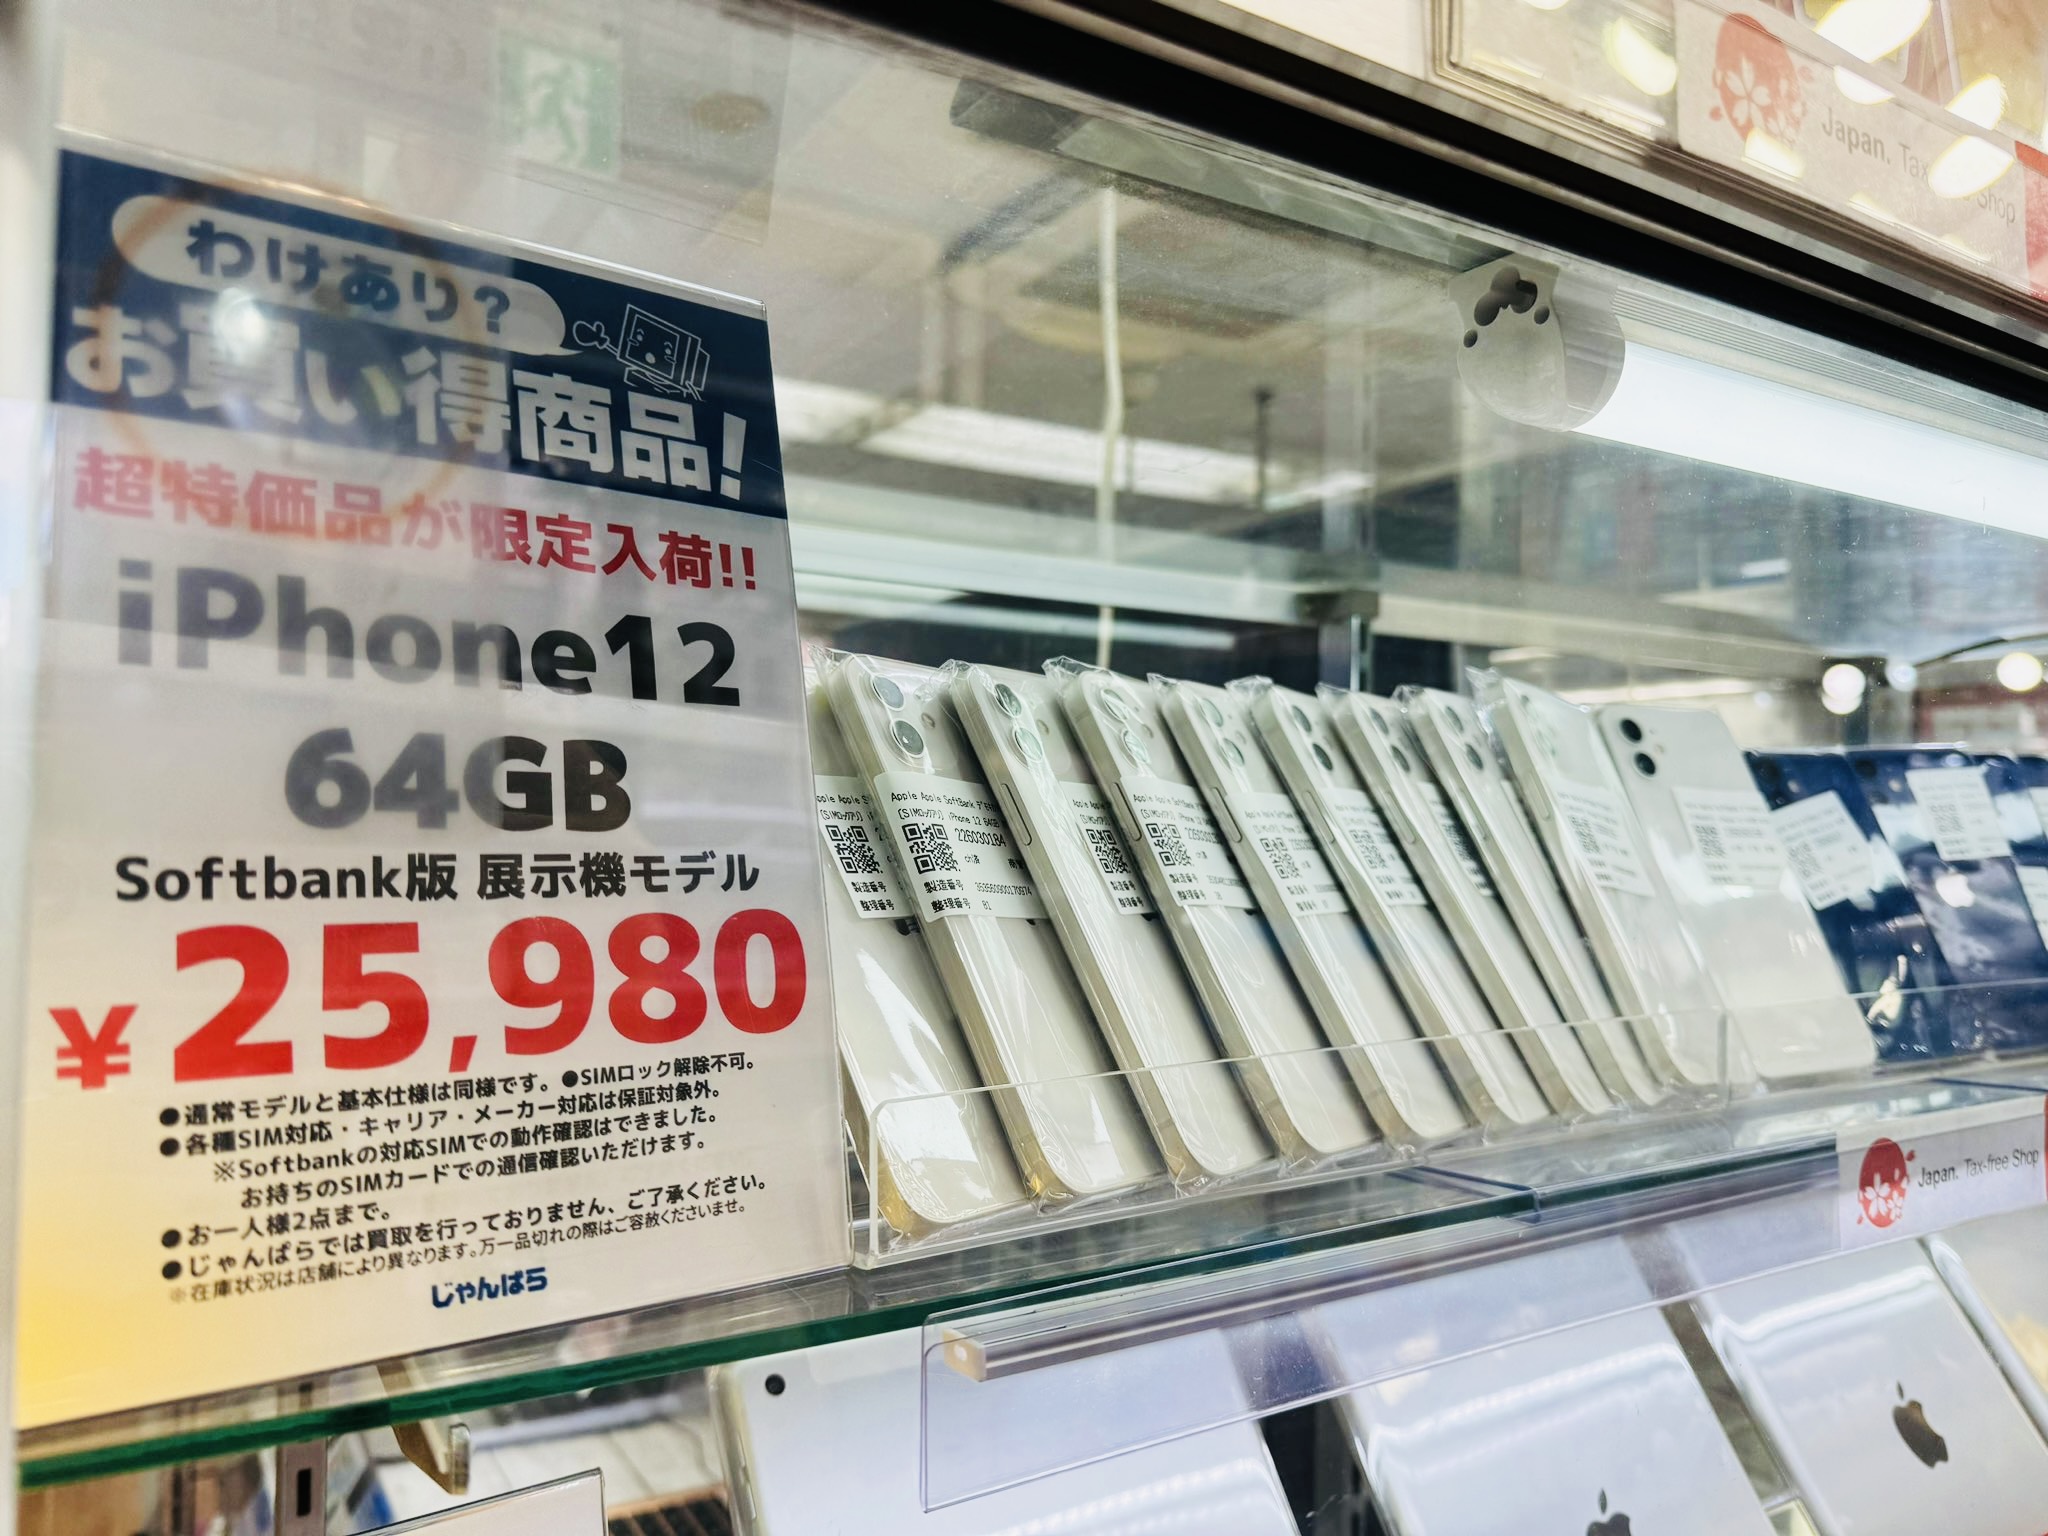 【訳あり激安】ソフトバンク iPhone12 64GB 中古品 25